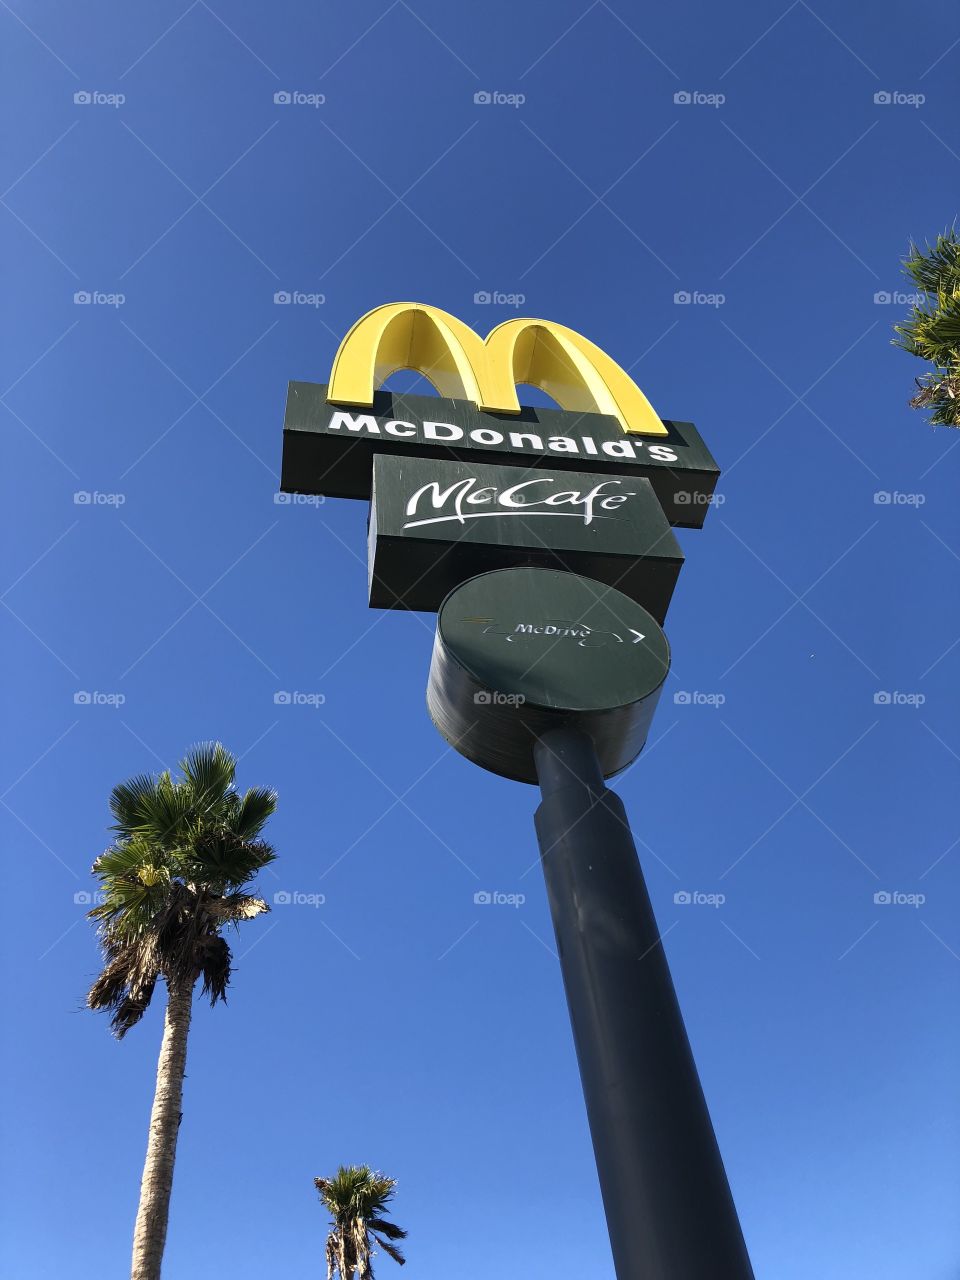 McDonald’s McDonald McDonalds